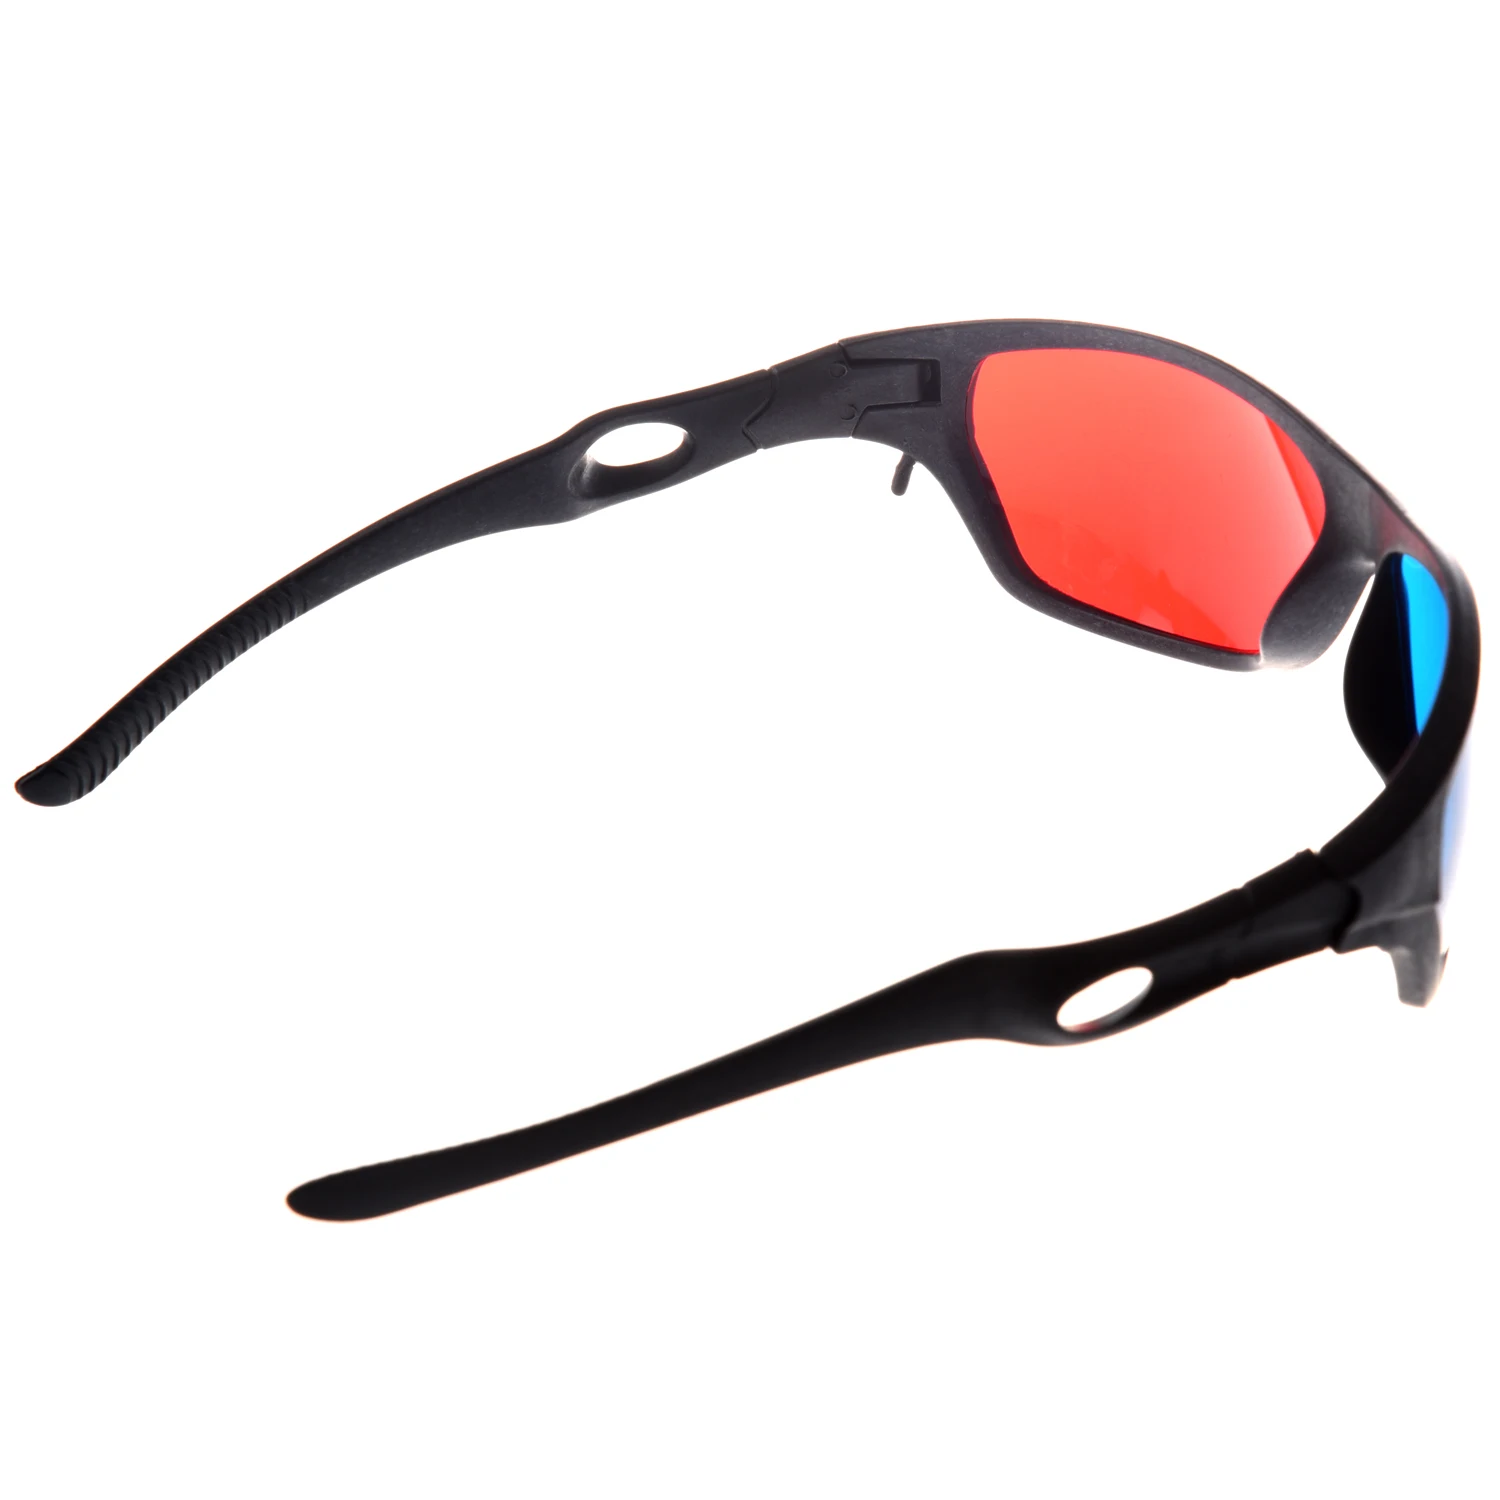 EDT-красный и синий голубой анаглиф простой стиль 3D очки 3D фильм игра-Дополнительное обновление